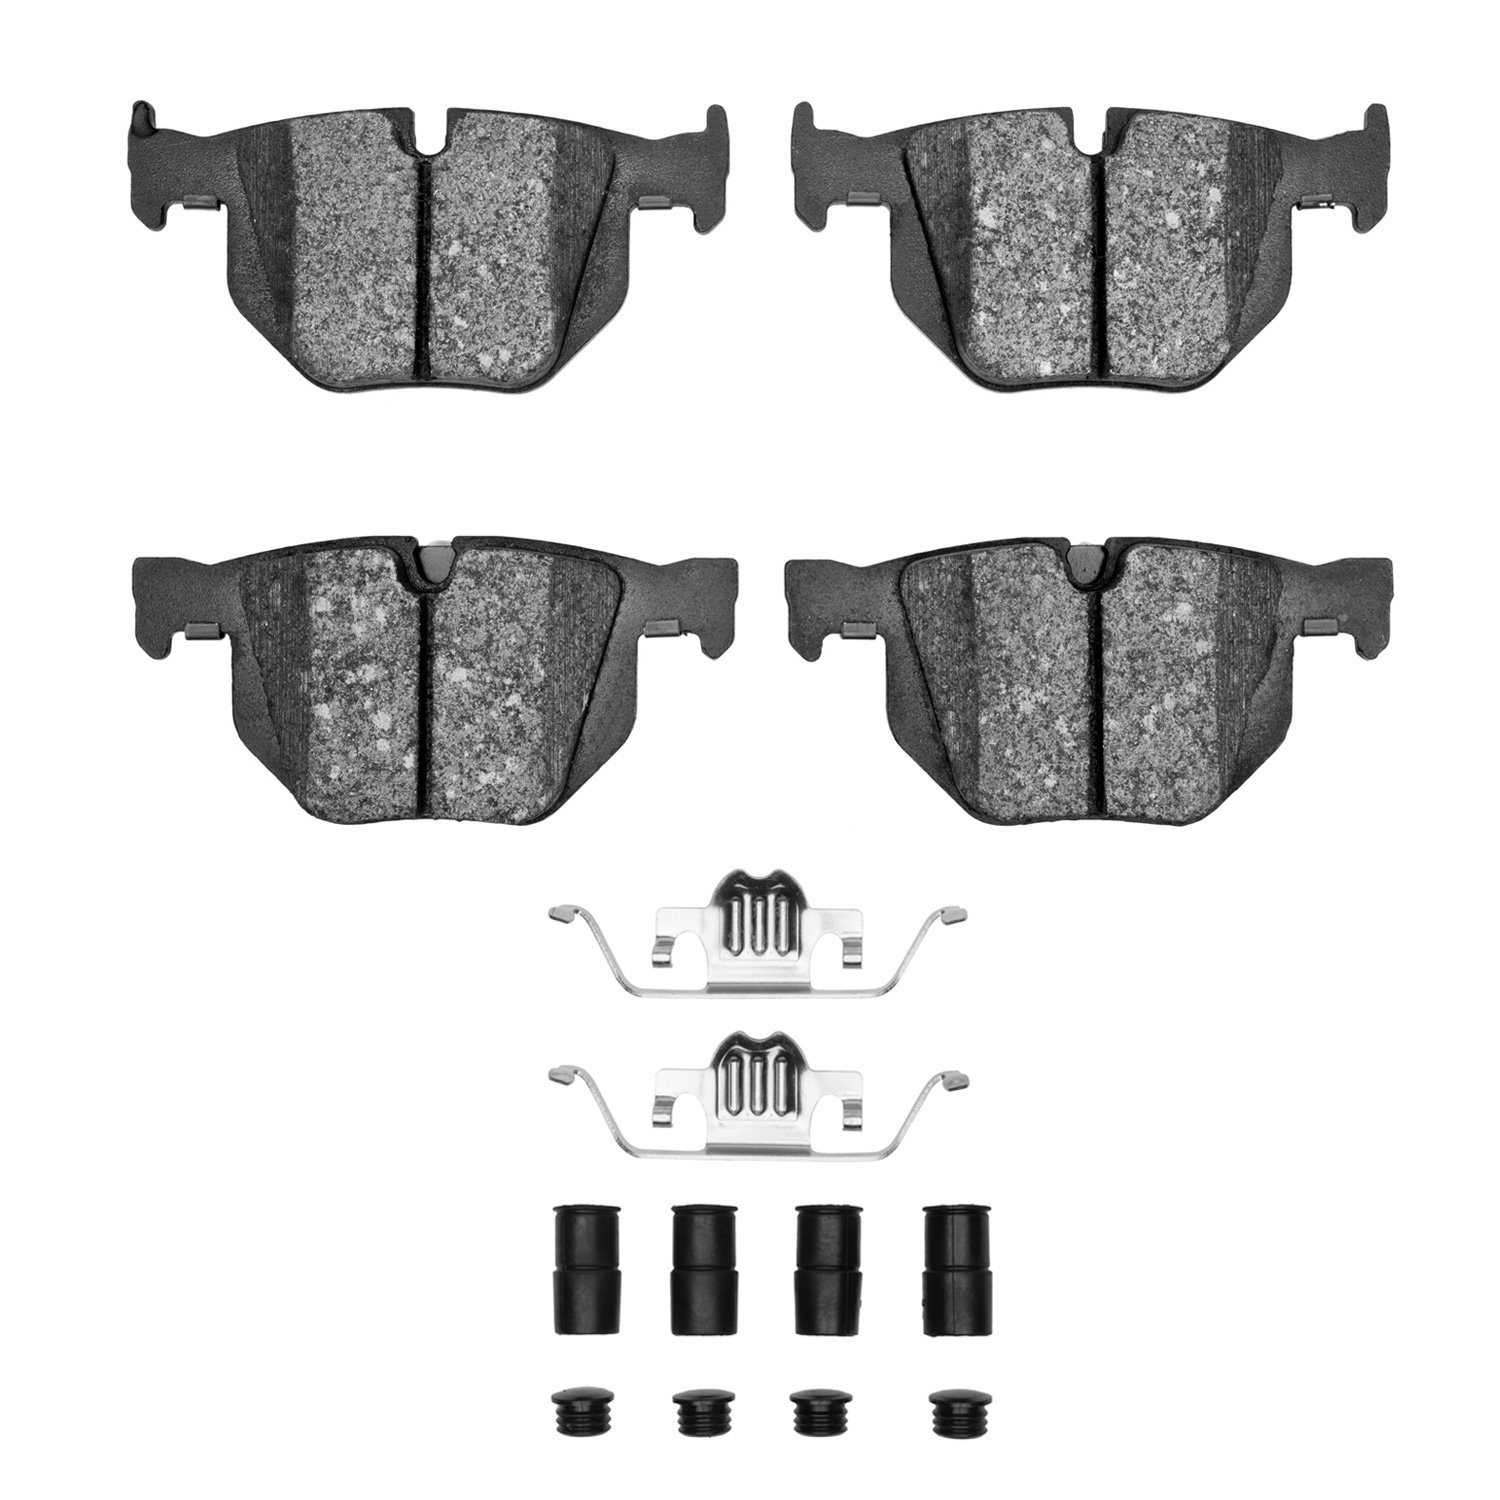 1310-1042-01 3000-Series Ceramic Brake Pads & Hardware Kit, 2007-2019 BMW, Position: Rear